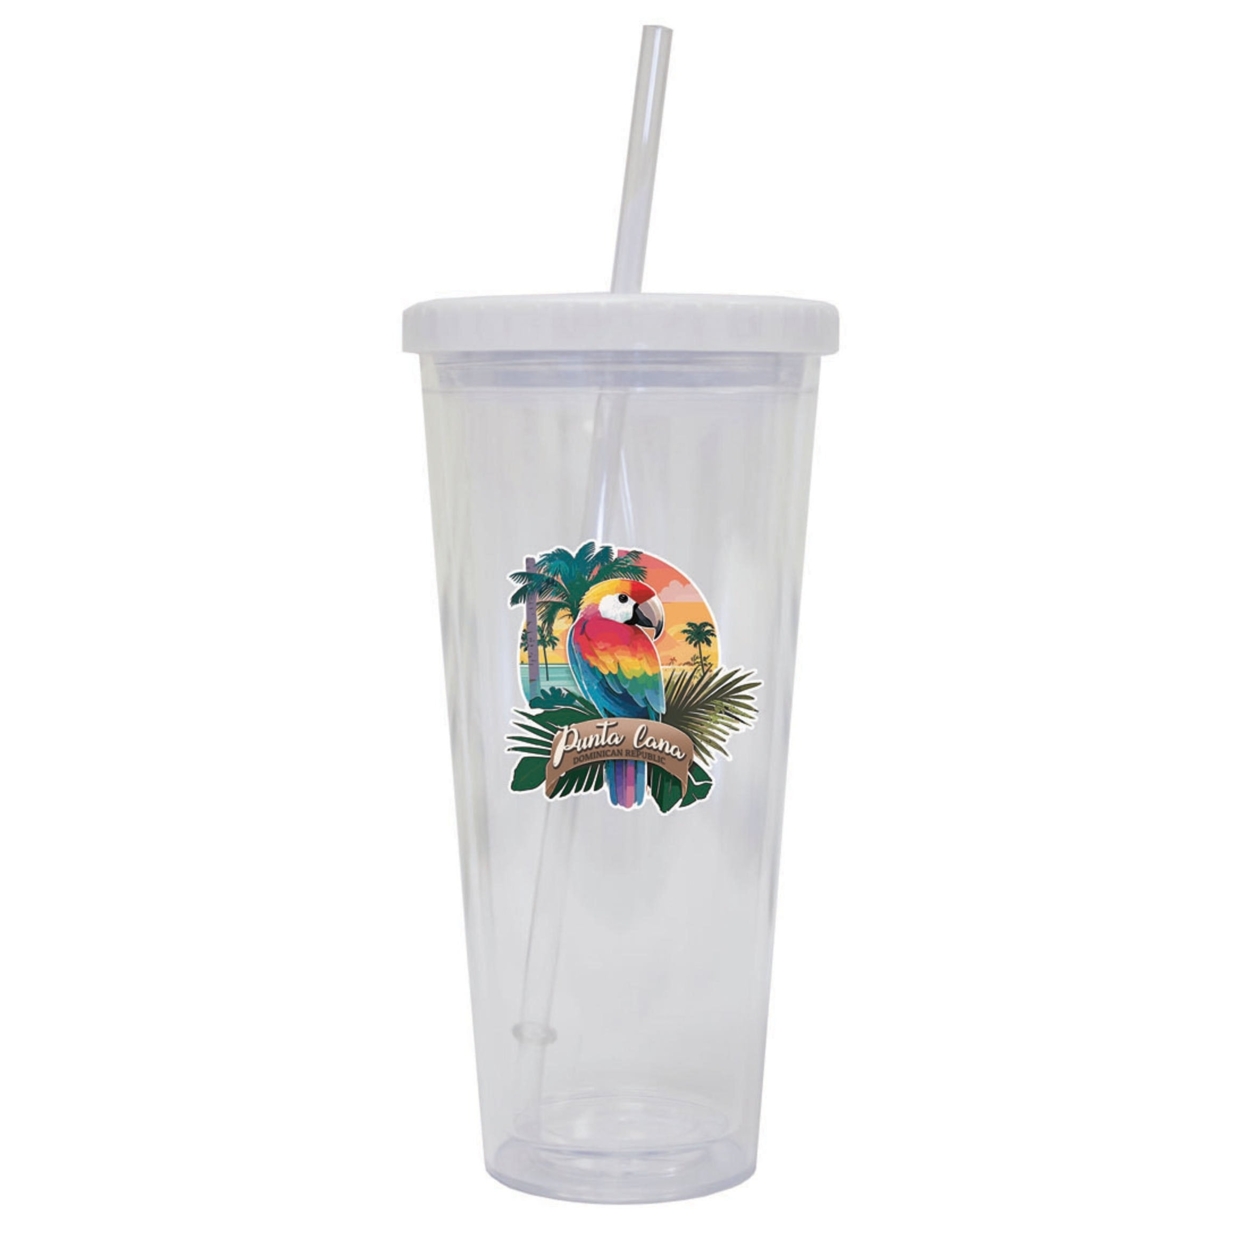 Punta Cana Dominican Republic Souvenir 24 Oz Reusable Plastic Straw Tumbler W/Lid & Straw - Parrot